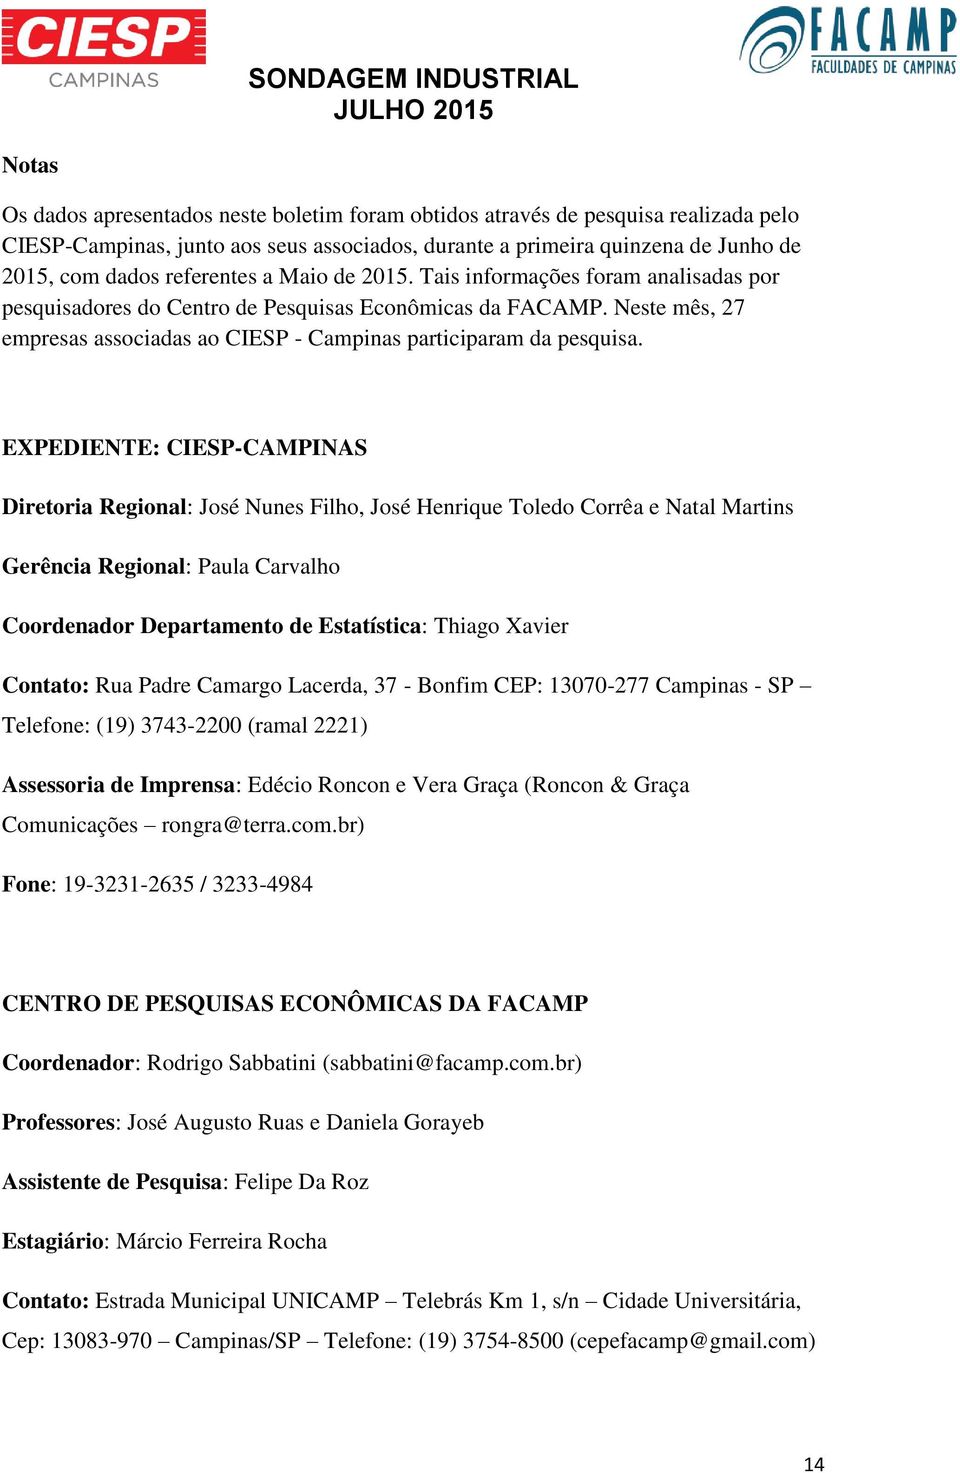 Neste mês, 27 empresas associadas ao CIESP - Campinas participaram da pesquisa.